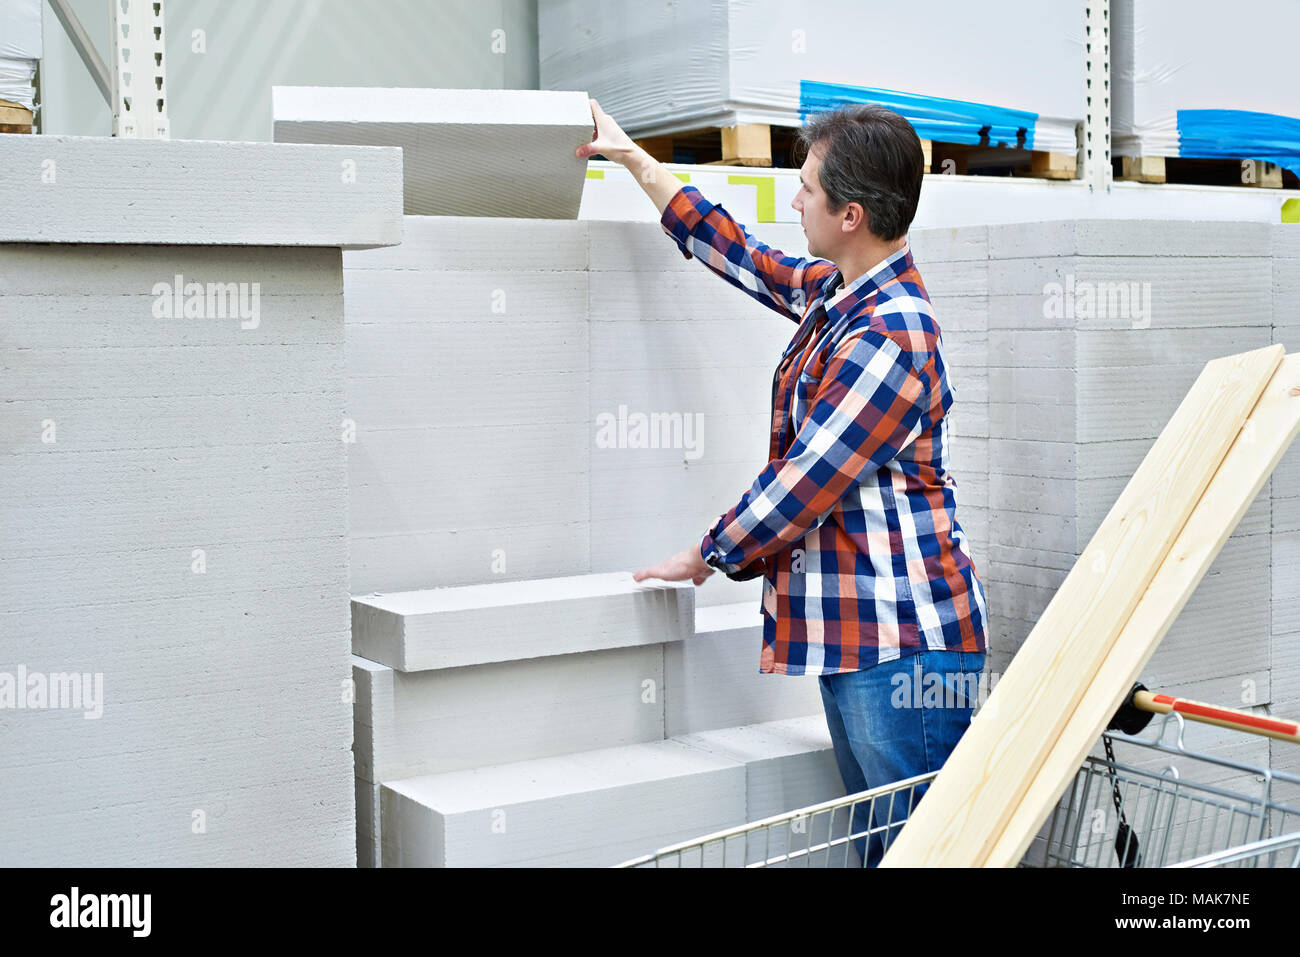 Mann wählt und kauft Schaumbeton Ziegelsteine in einem Supermarkt Stockfoto